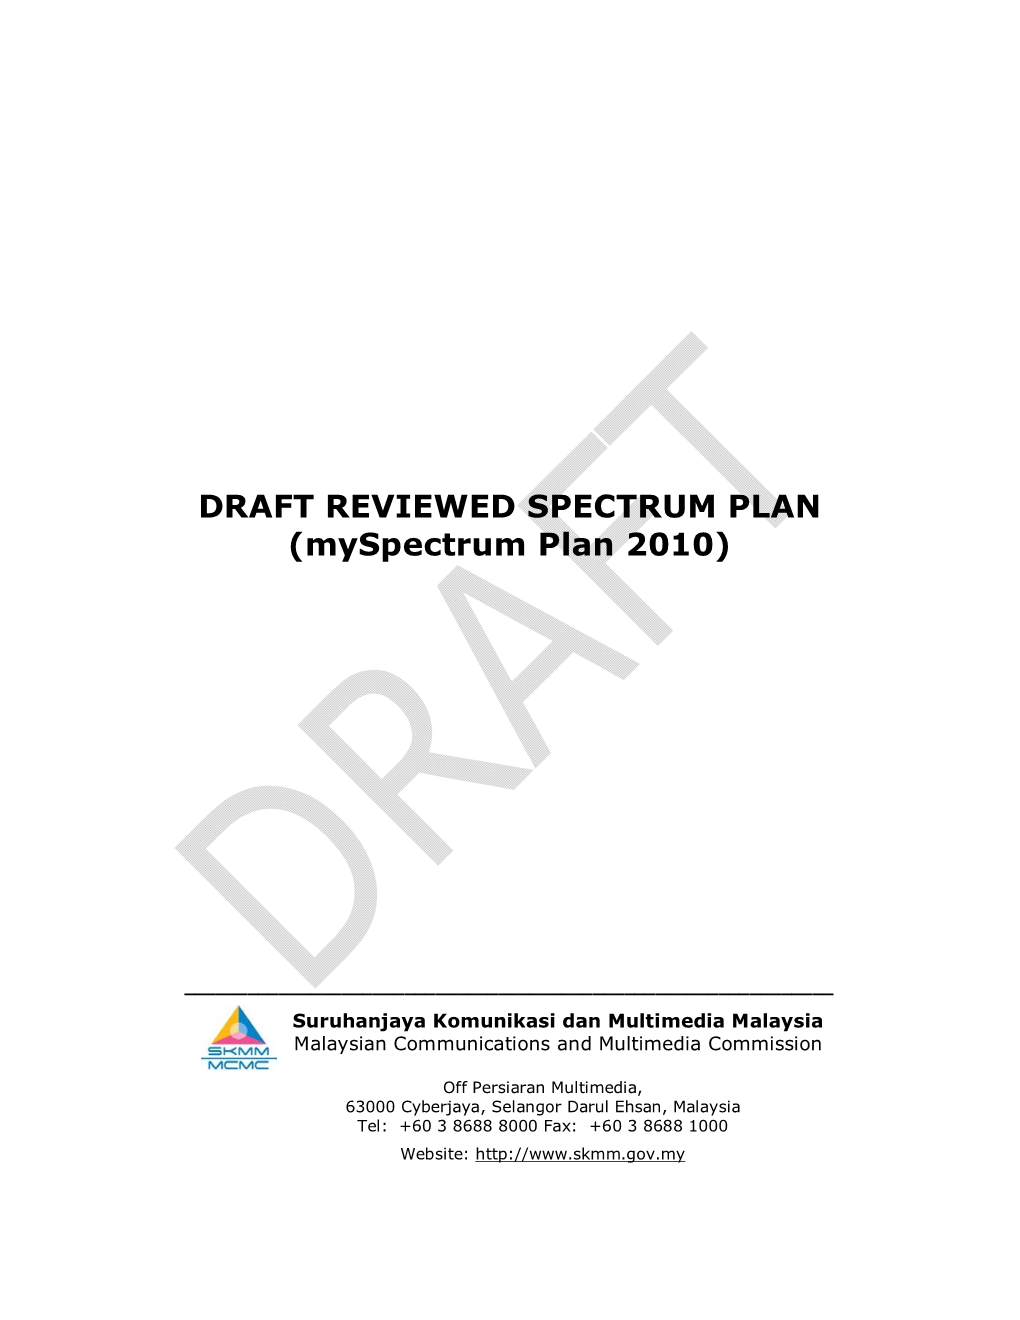 DRAFT REVIEWED SPECTRUM PLAN (Myspectrum Plan 2010)